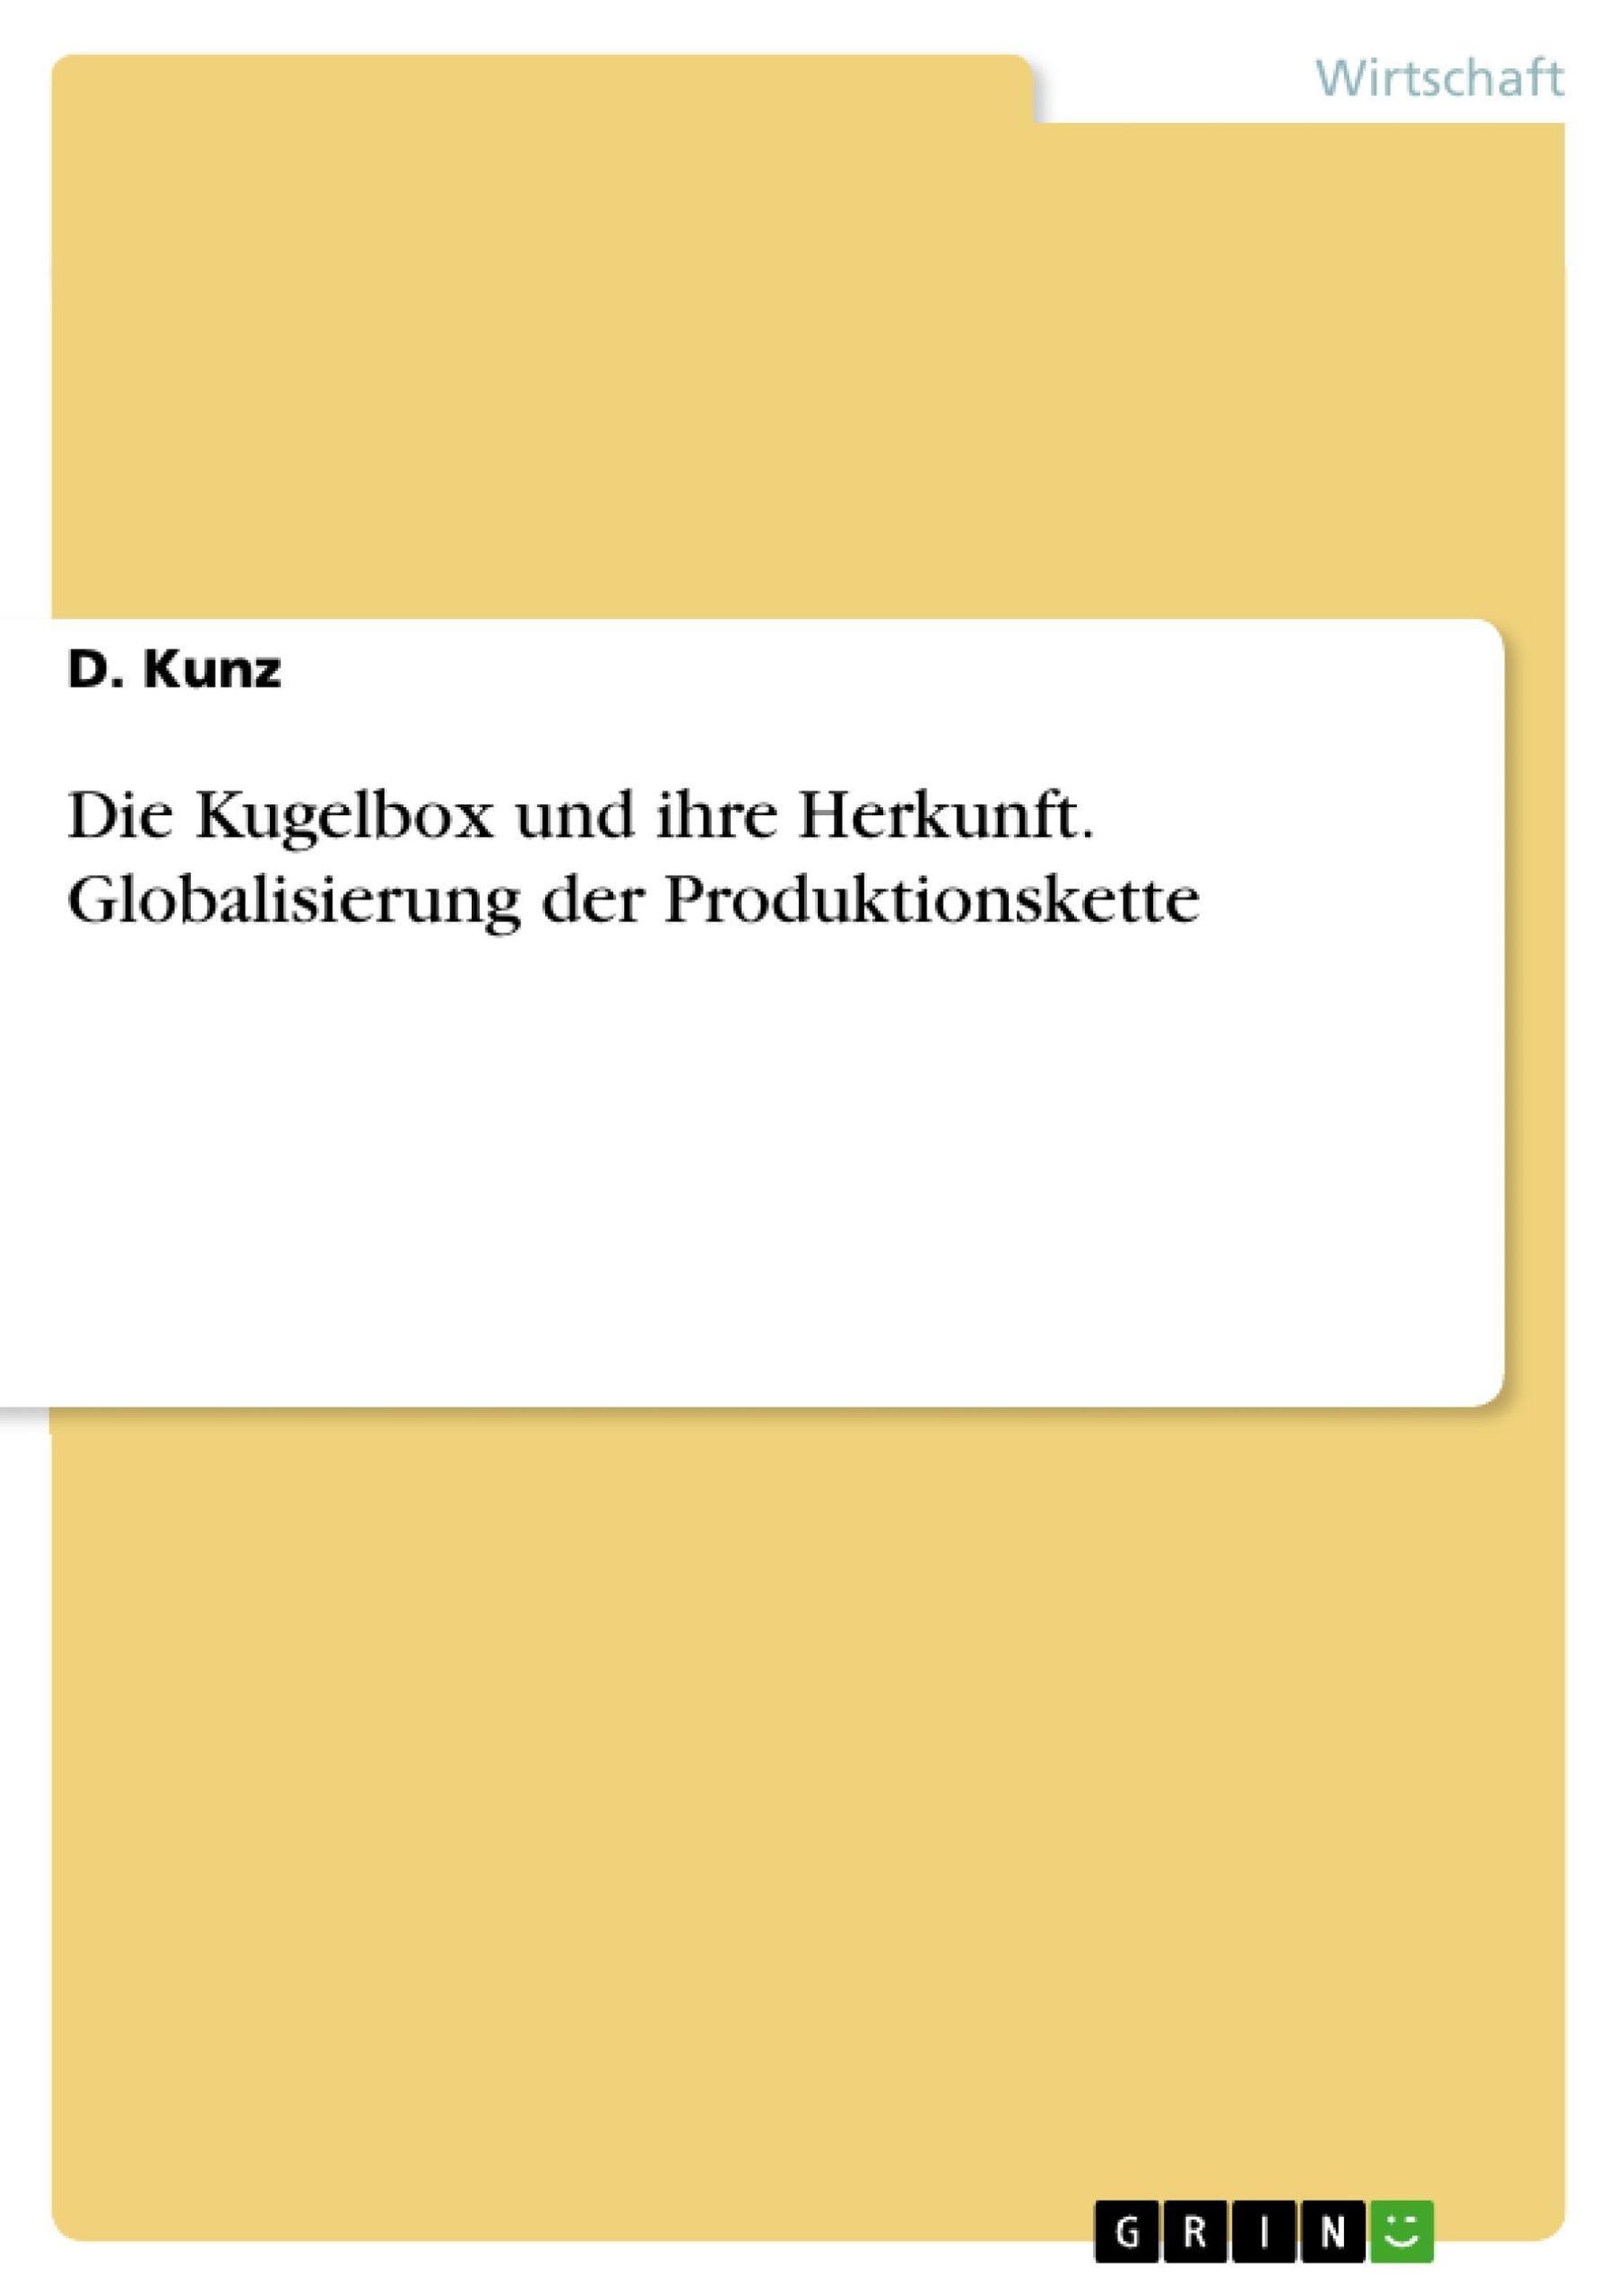 Die Kugelbox und ihre Herkunft. Globalisierung der Produktionskette eBook  v. D. Kunz | Weltbild